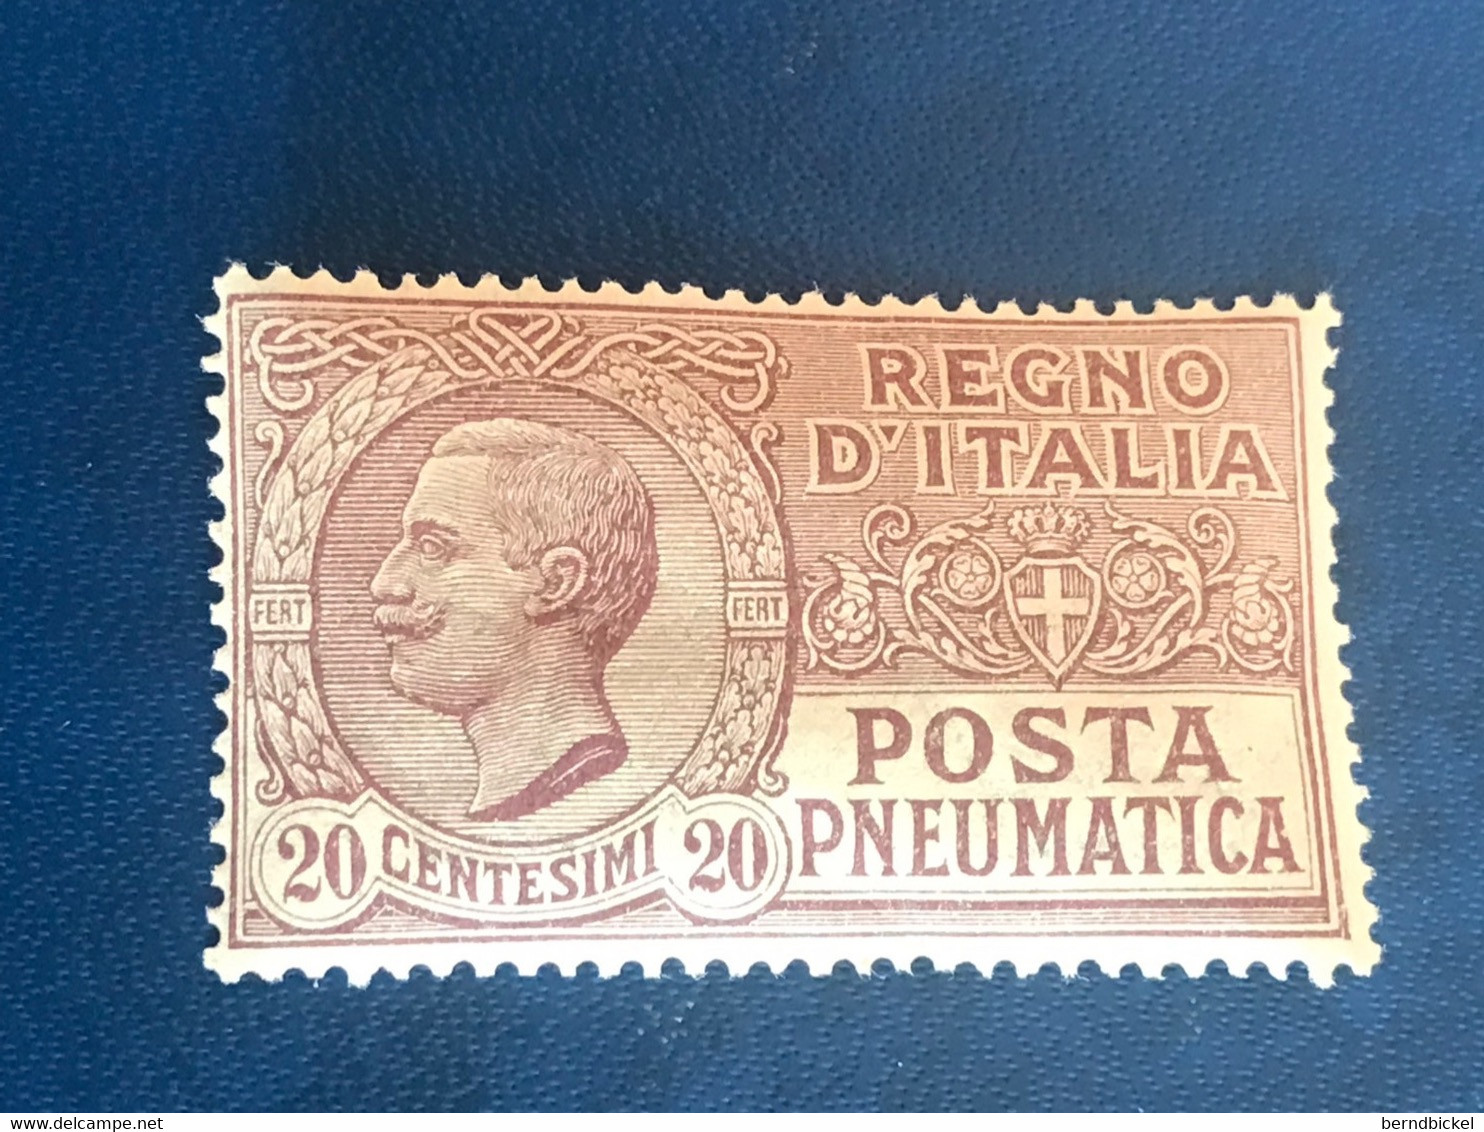 Italien 20 Centesimi 1925 Postfrisch Posta Pneumatica Michel 253 - Pneumatische Post